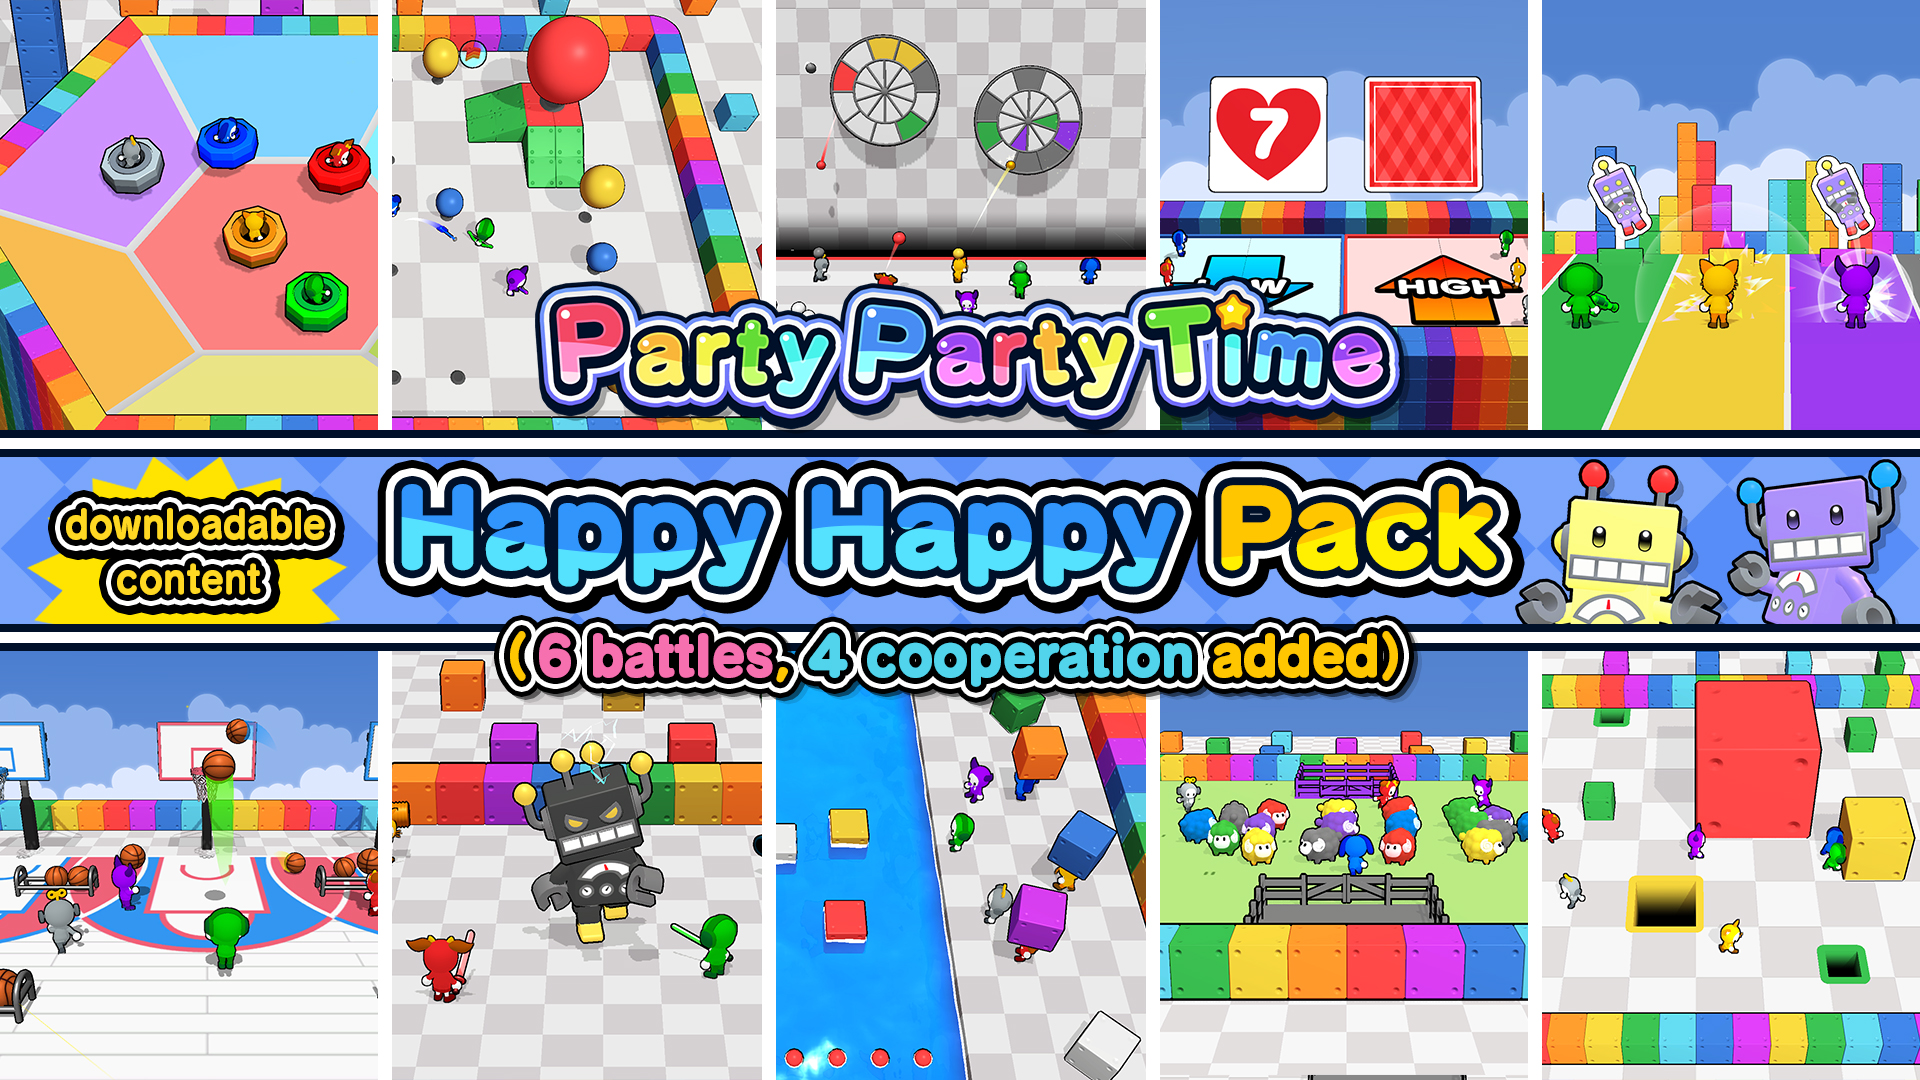 Happy Happy Pack